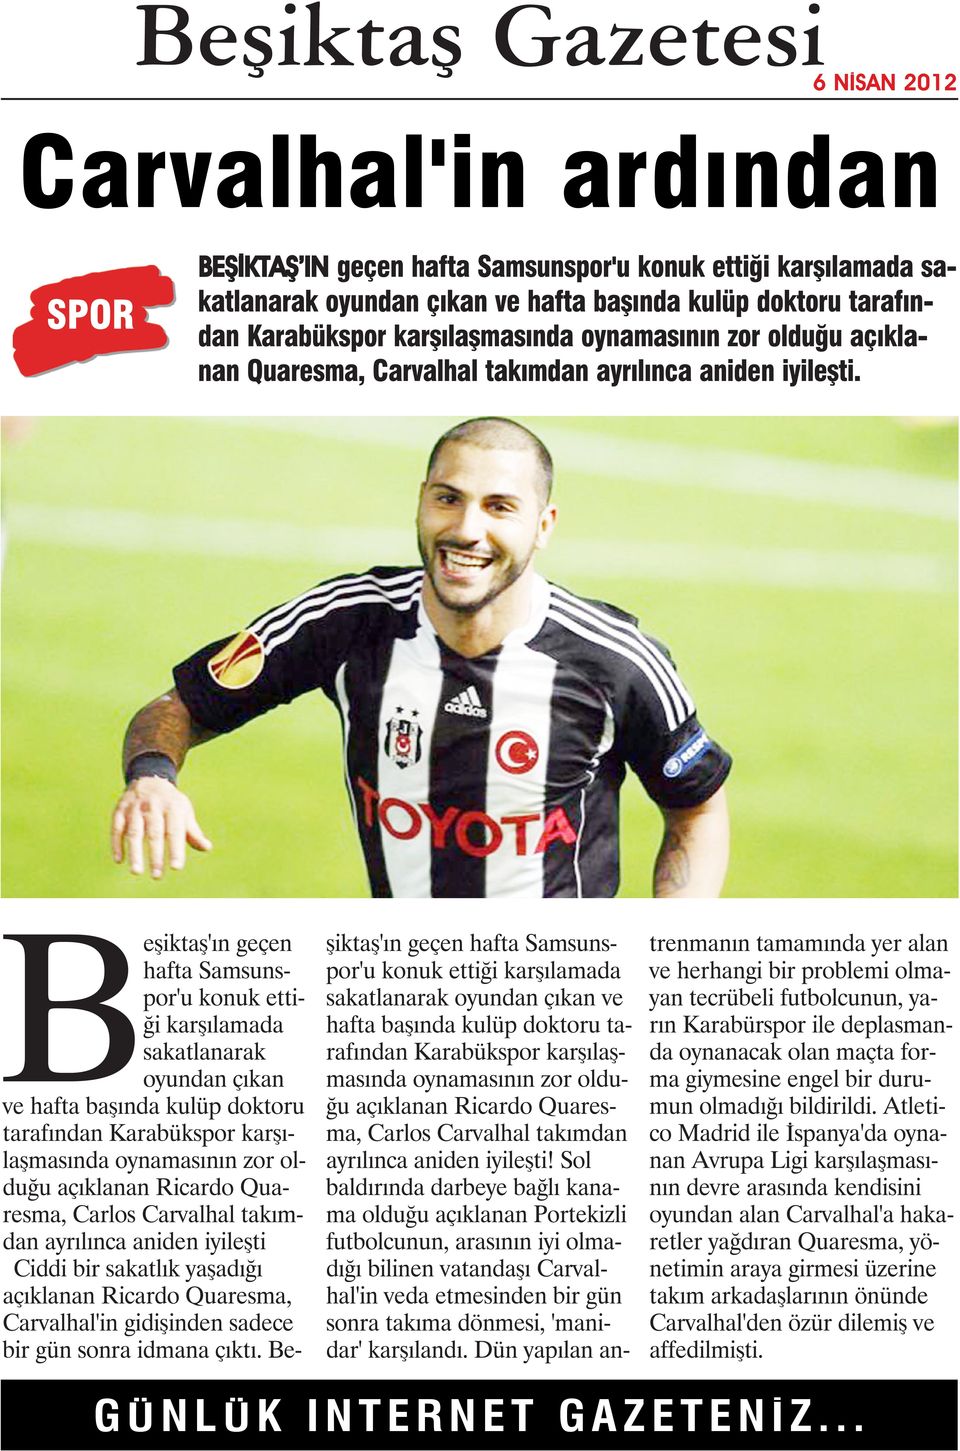 Beşiktaş'ın geçen hafta Samsunspor'u konuk ettiği karşılamada sakatlanarak oyundan çıkan ve hafta başında kulüp doktoru tarafından Karabükspor karşılaşmasında oynamasının zor olduğu açıklanan Ricardo